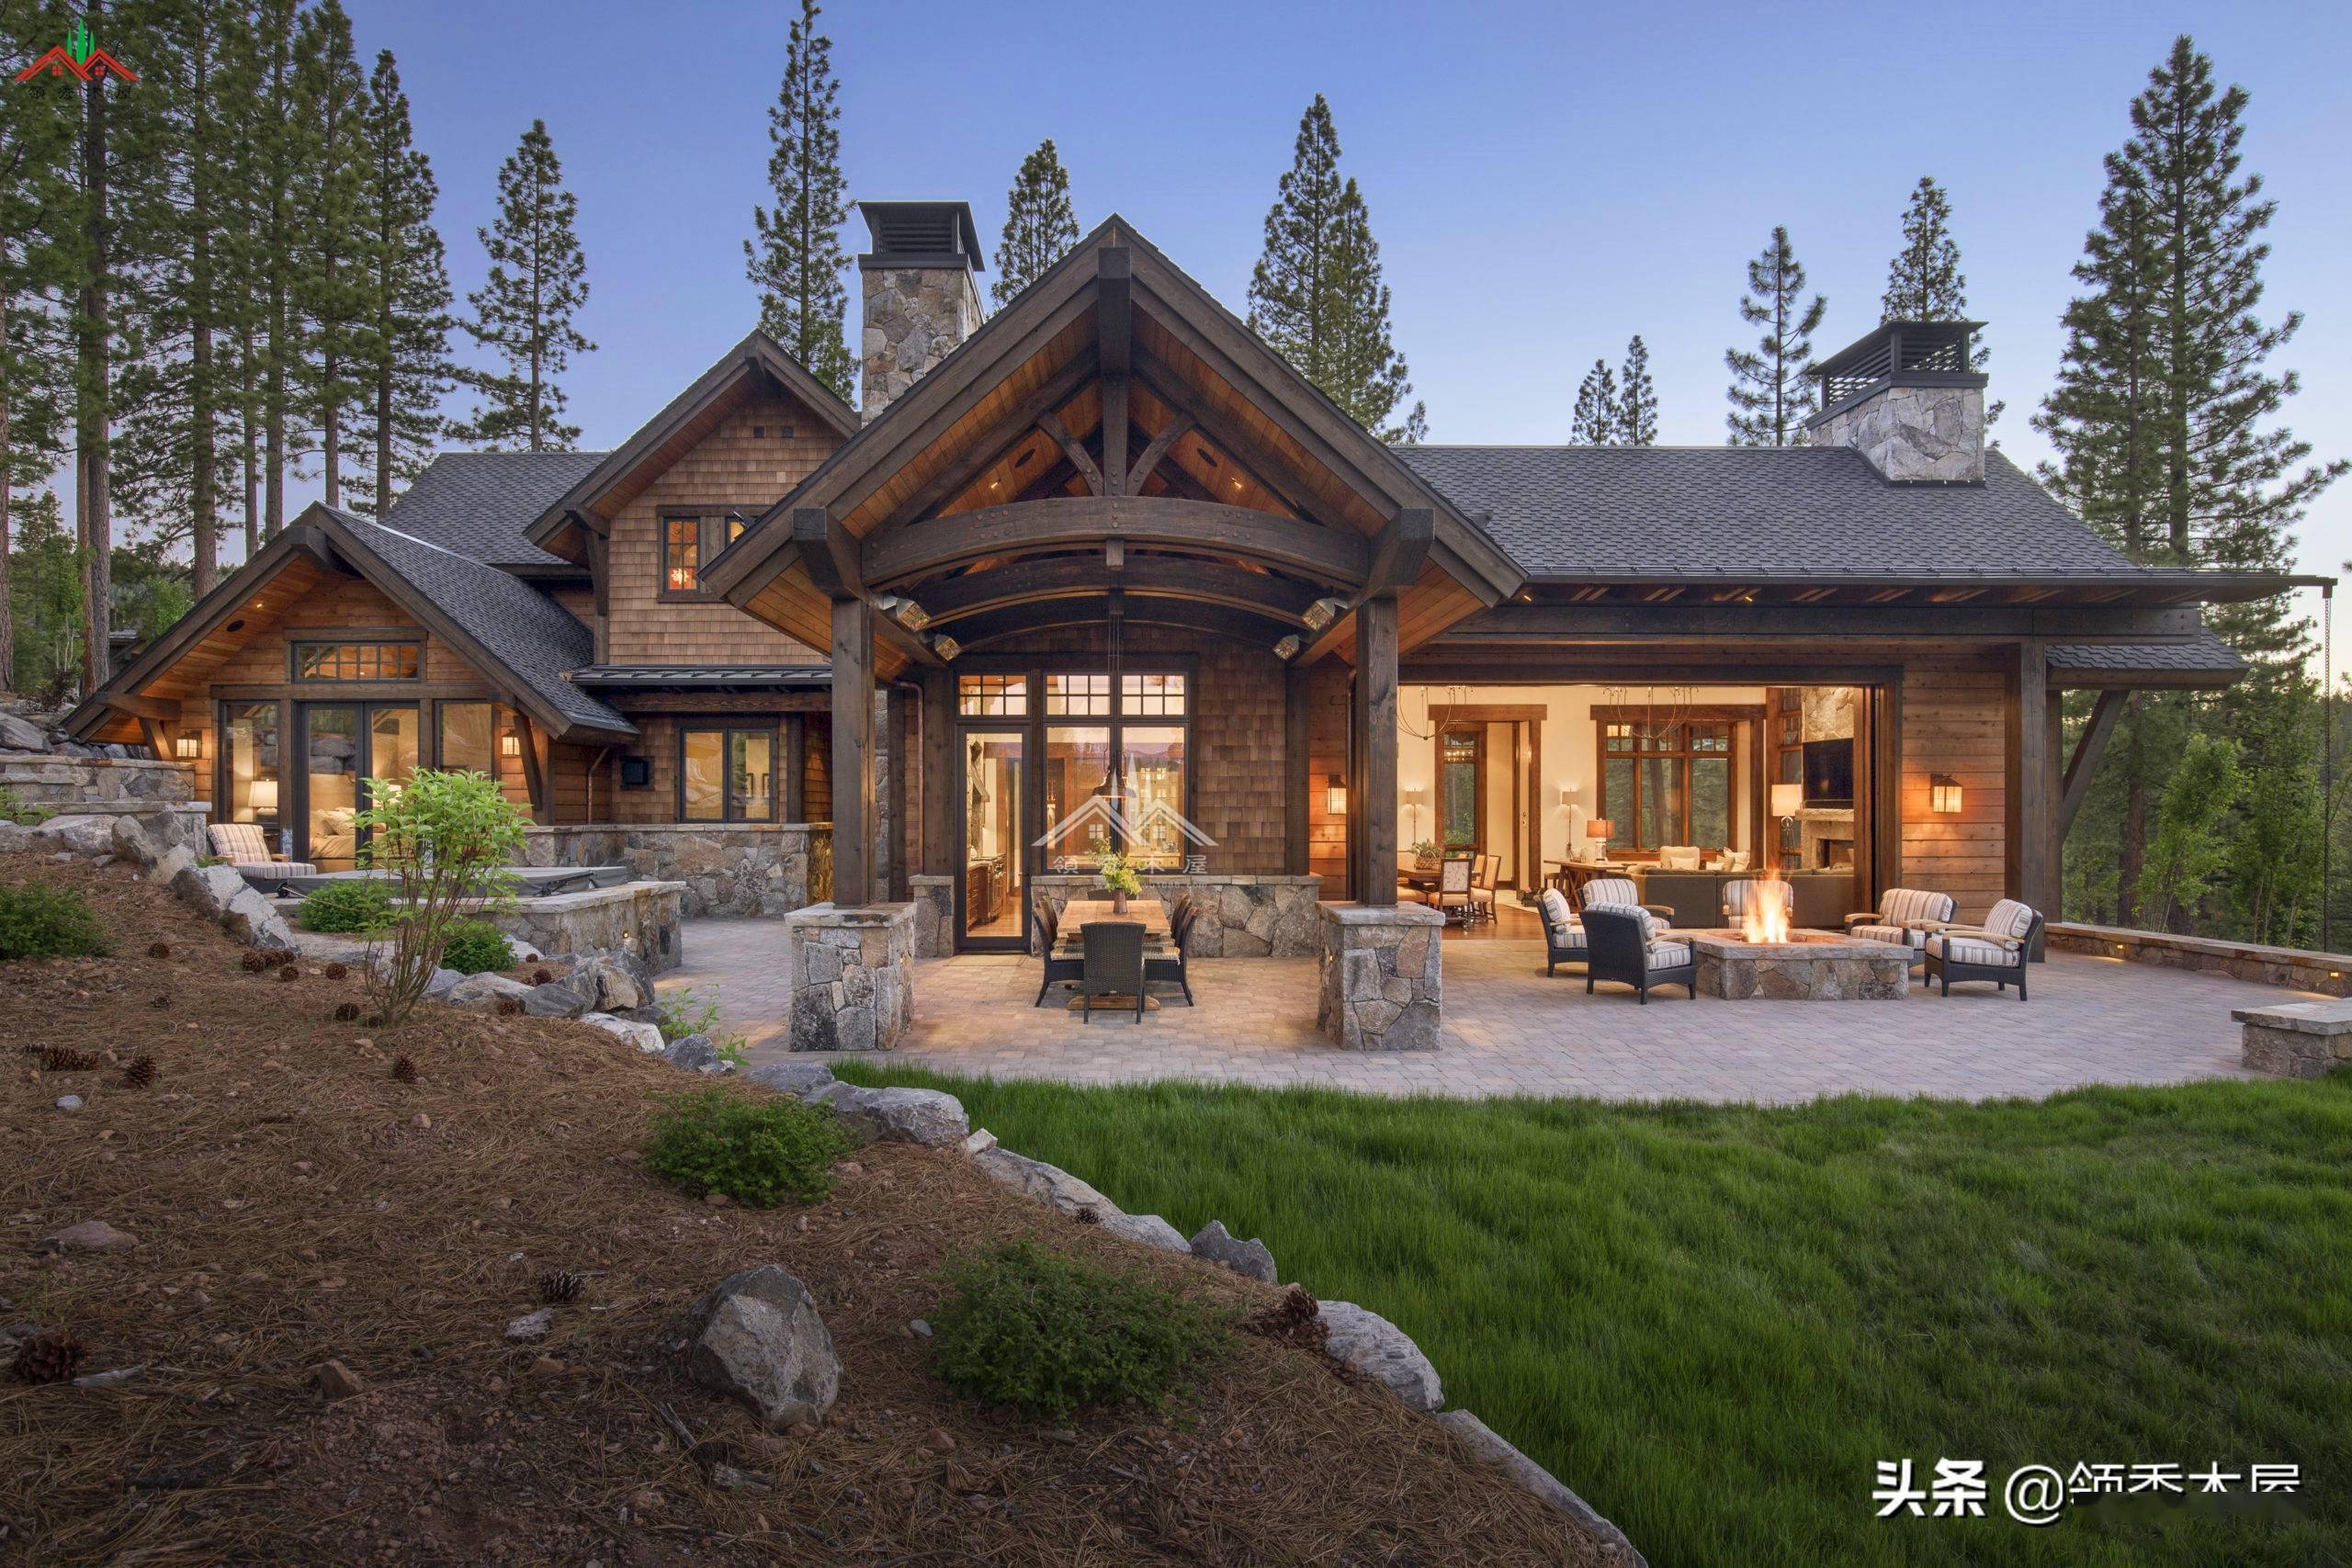 当你有100万后你愿意去乡下建造一栋这样特色的山地木别墅吗?